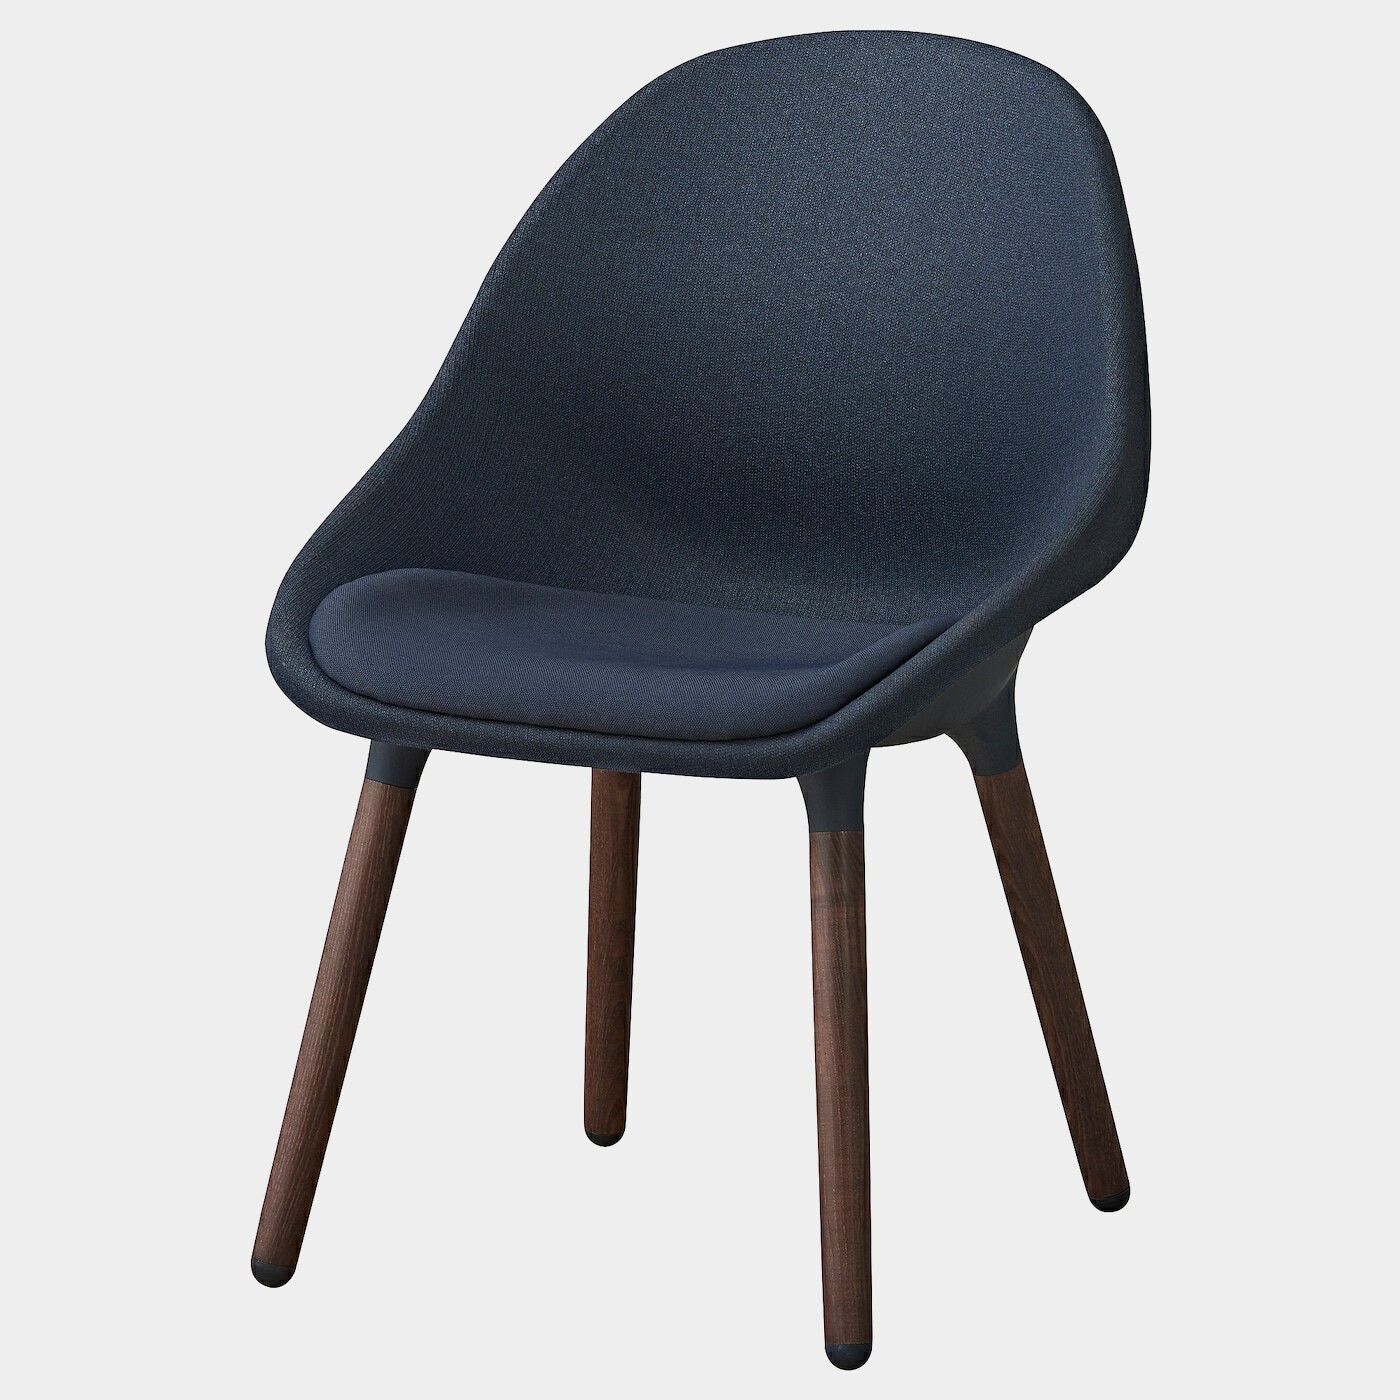 BALTSAR Stuhl  -  - Möbel Ideen für dein Zuhause von Home Trends. Möbel Trends von Social Media Influencer für dein Skandi Zuhause.